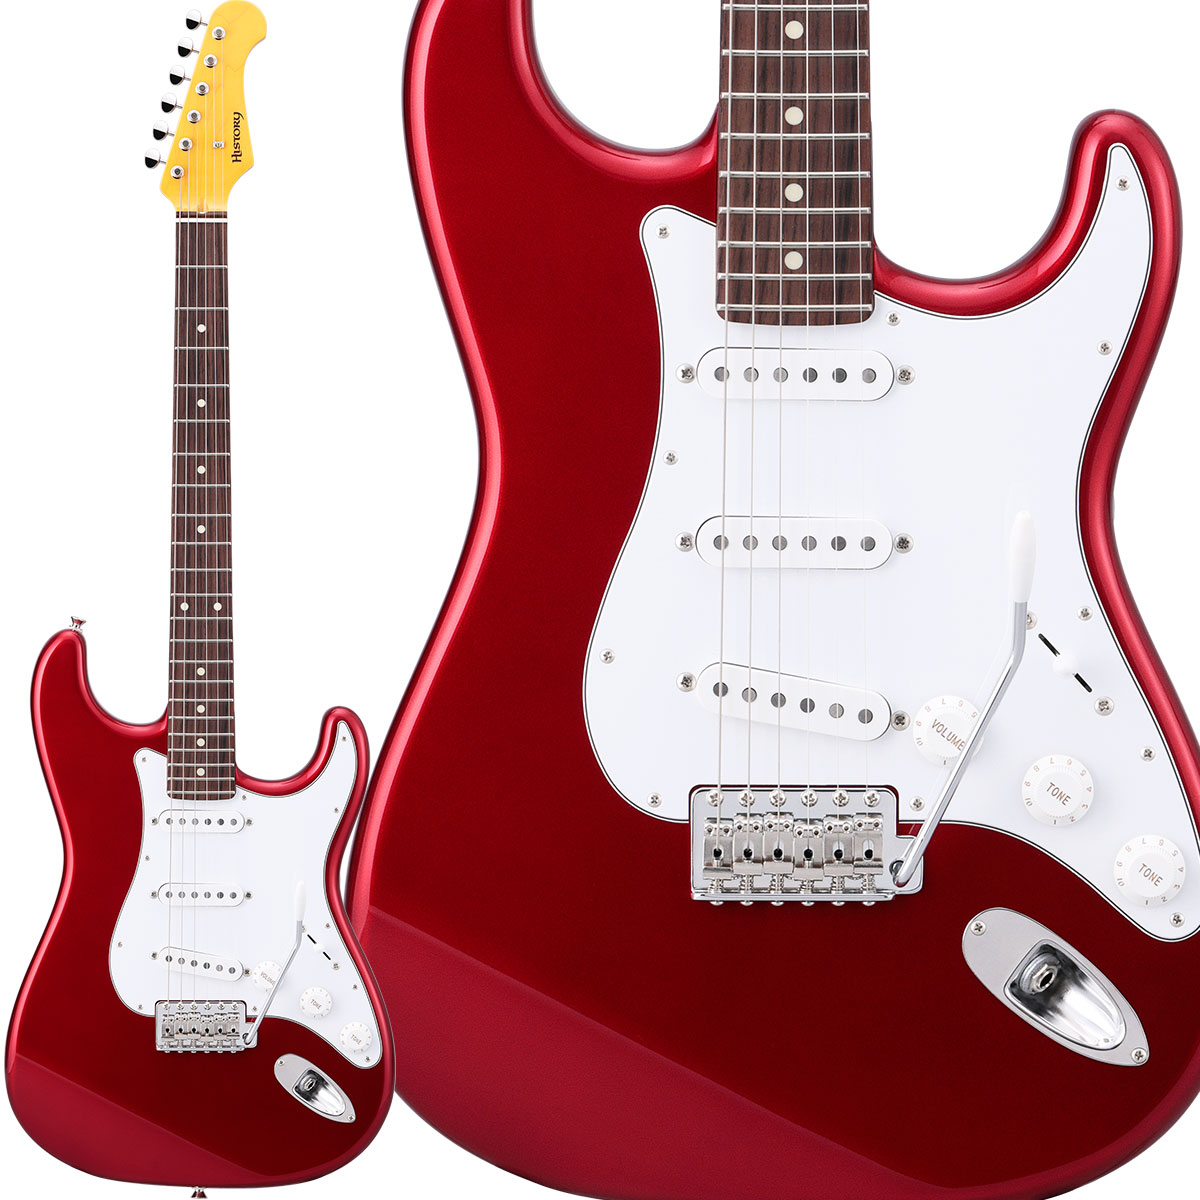 【純国産ギター】 HISTORY HST-Standard CAR Candy Apple Red ハムバッカー切替可能 アルダーボディ エレキギター ストラトキャスター 【ヒストリー 3年保証 日本製 Standard series】